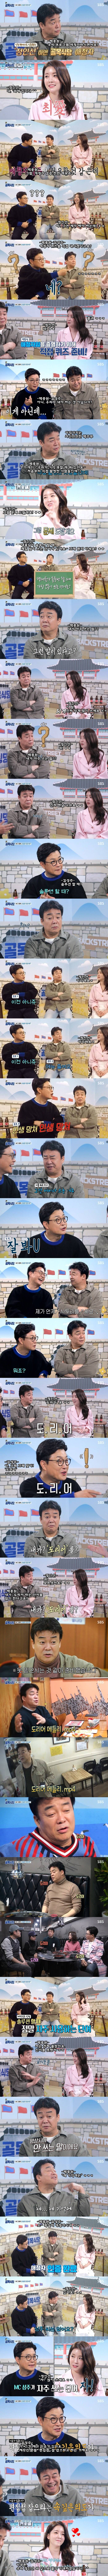 정인선 배우의 골목식당 MC 데뷔전 활약상 ㅋㅋ .JPG | 인스티즈